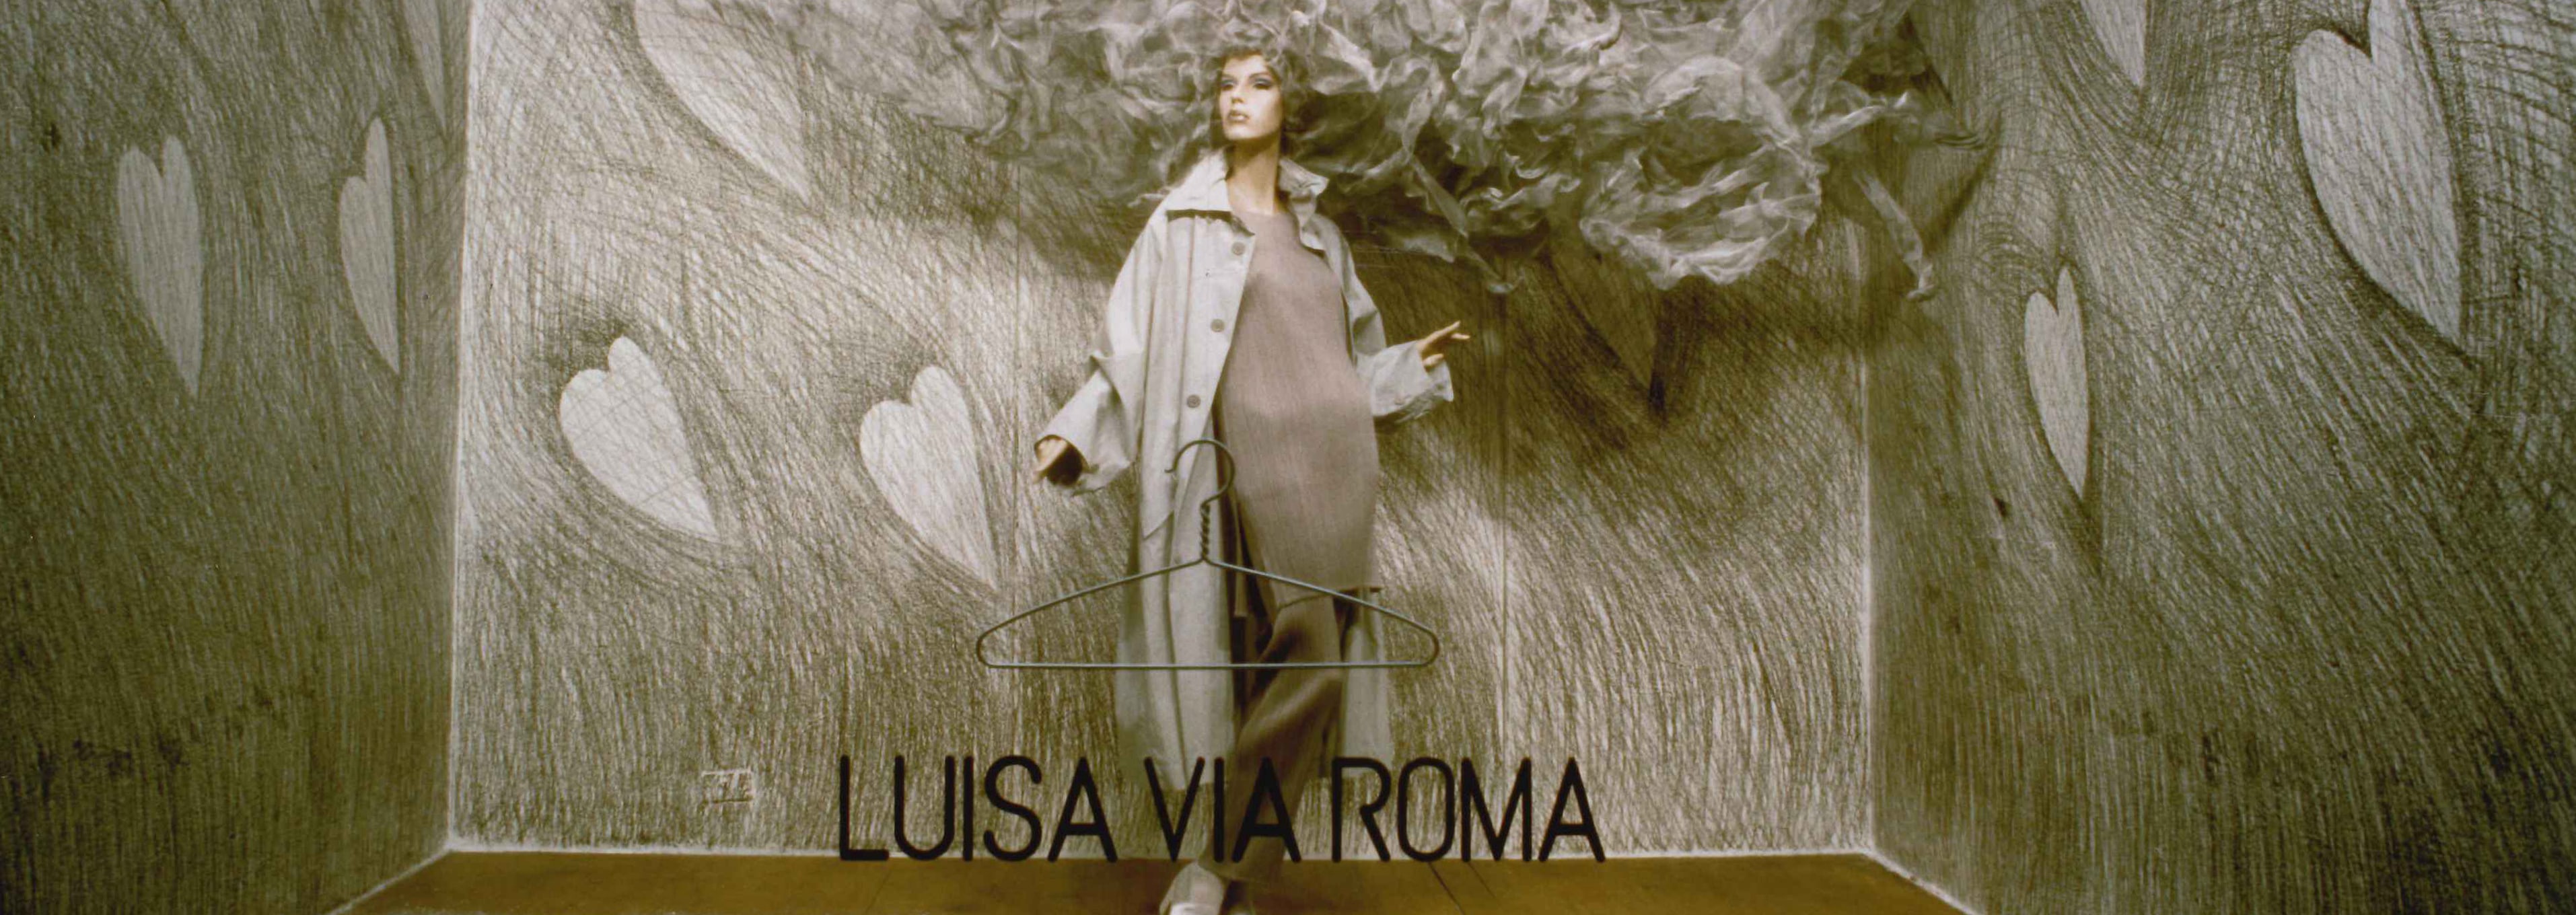 Lorenzo Gemma, der kreative Kopf hinter den Schaufenstern von LuisaViaRoma